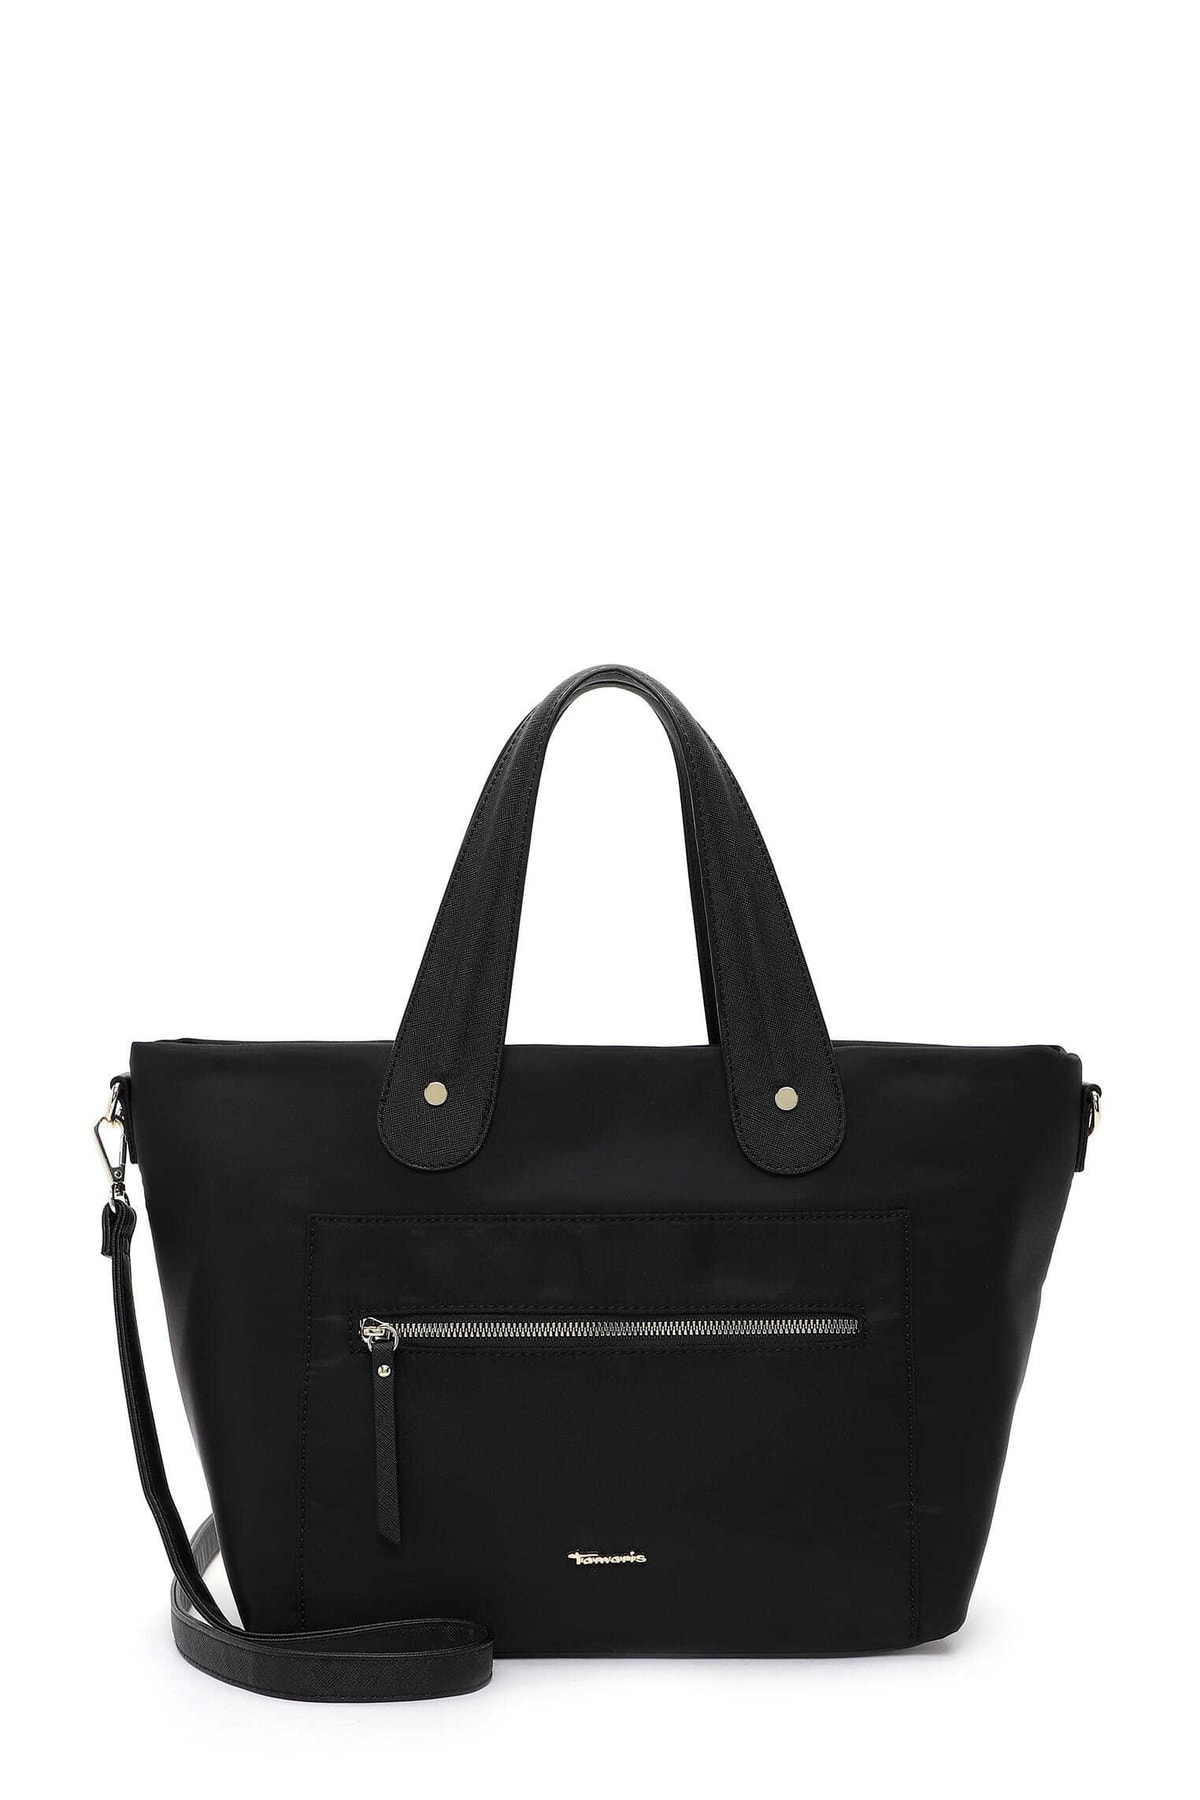 Tamaris Handtasche Schwarz Unifarben Fast ausverkauft